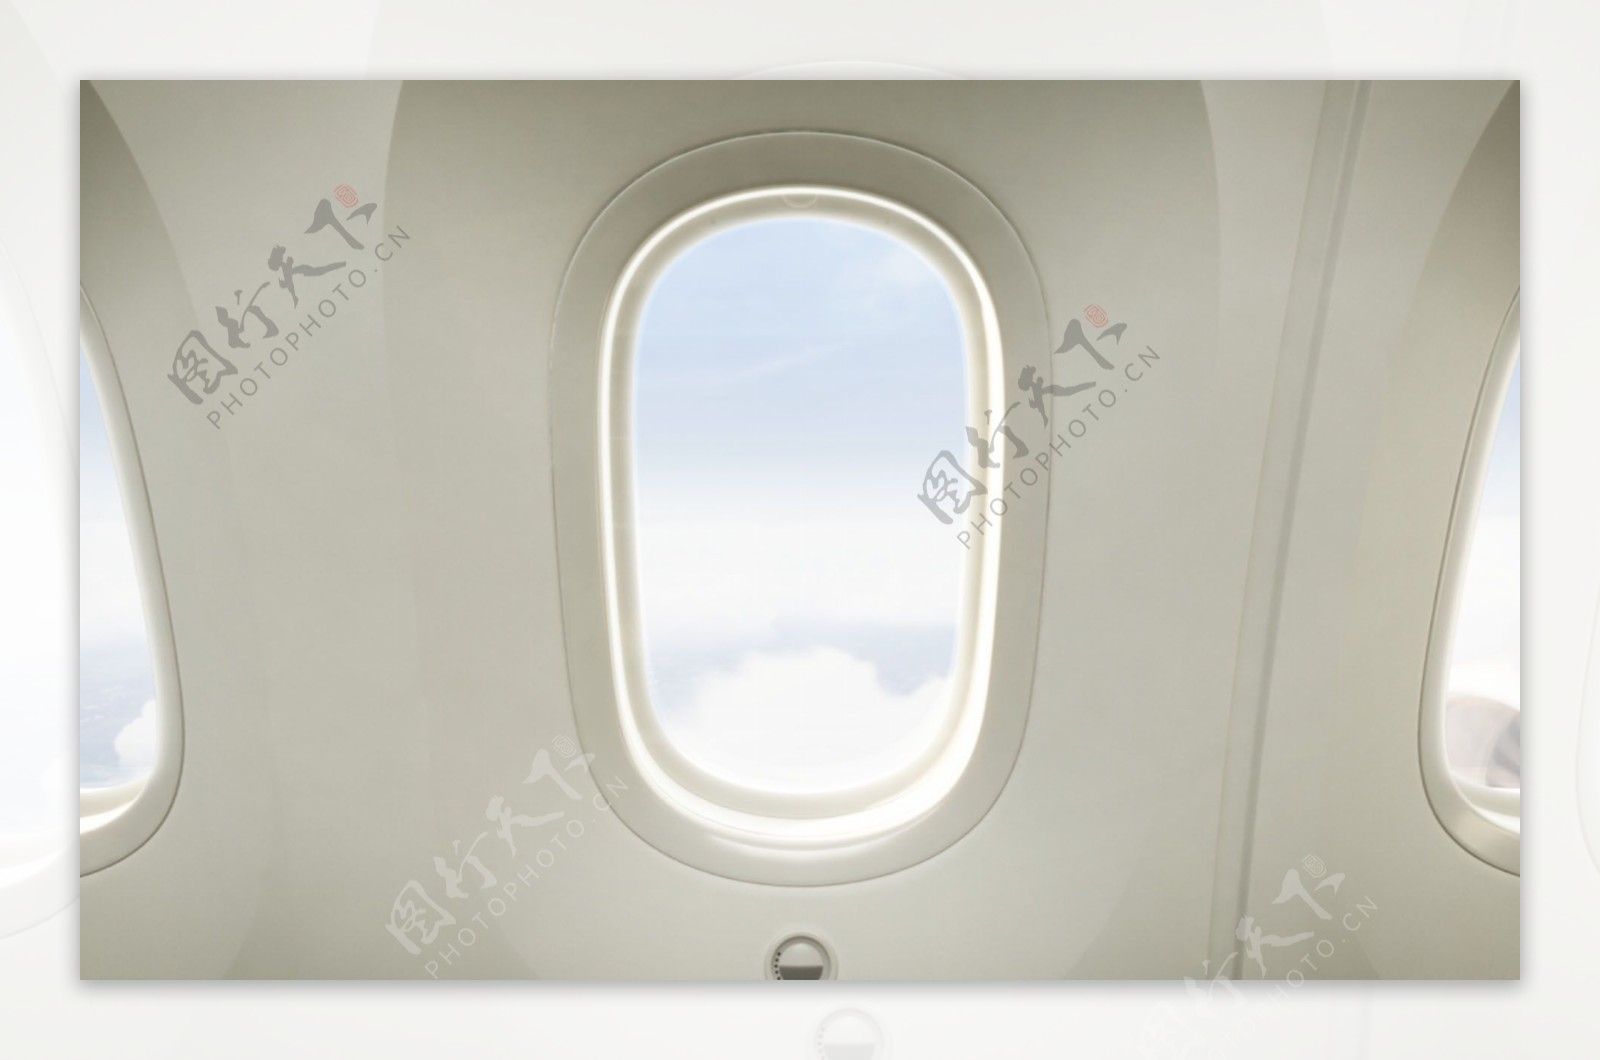 飞机窗口图片